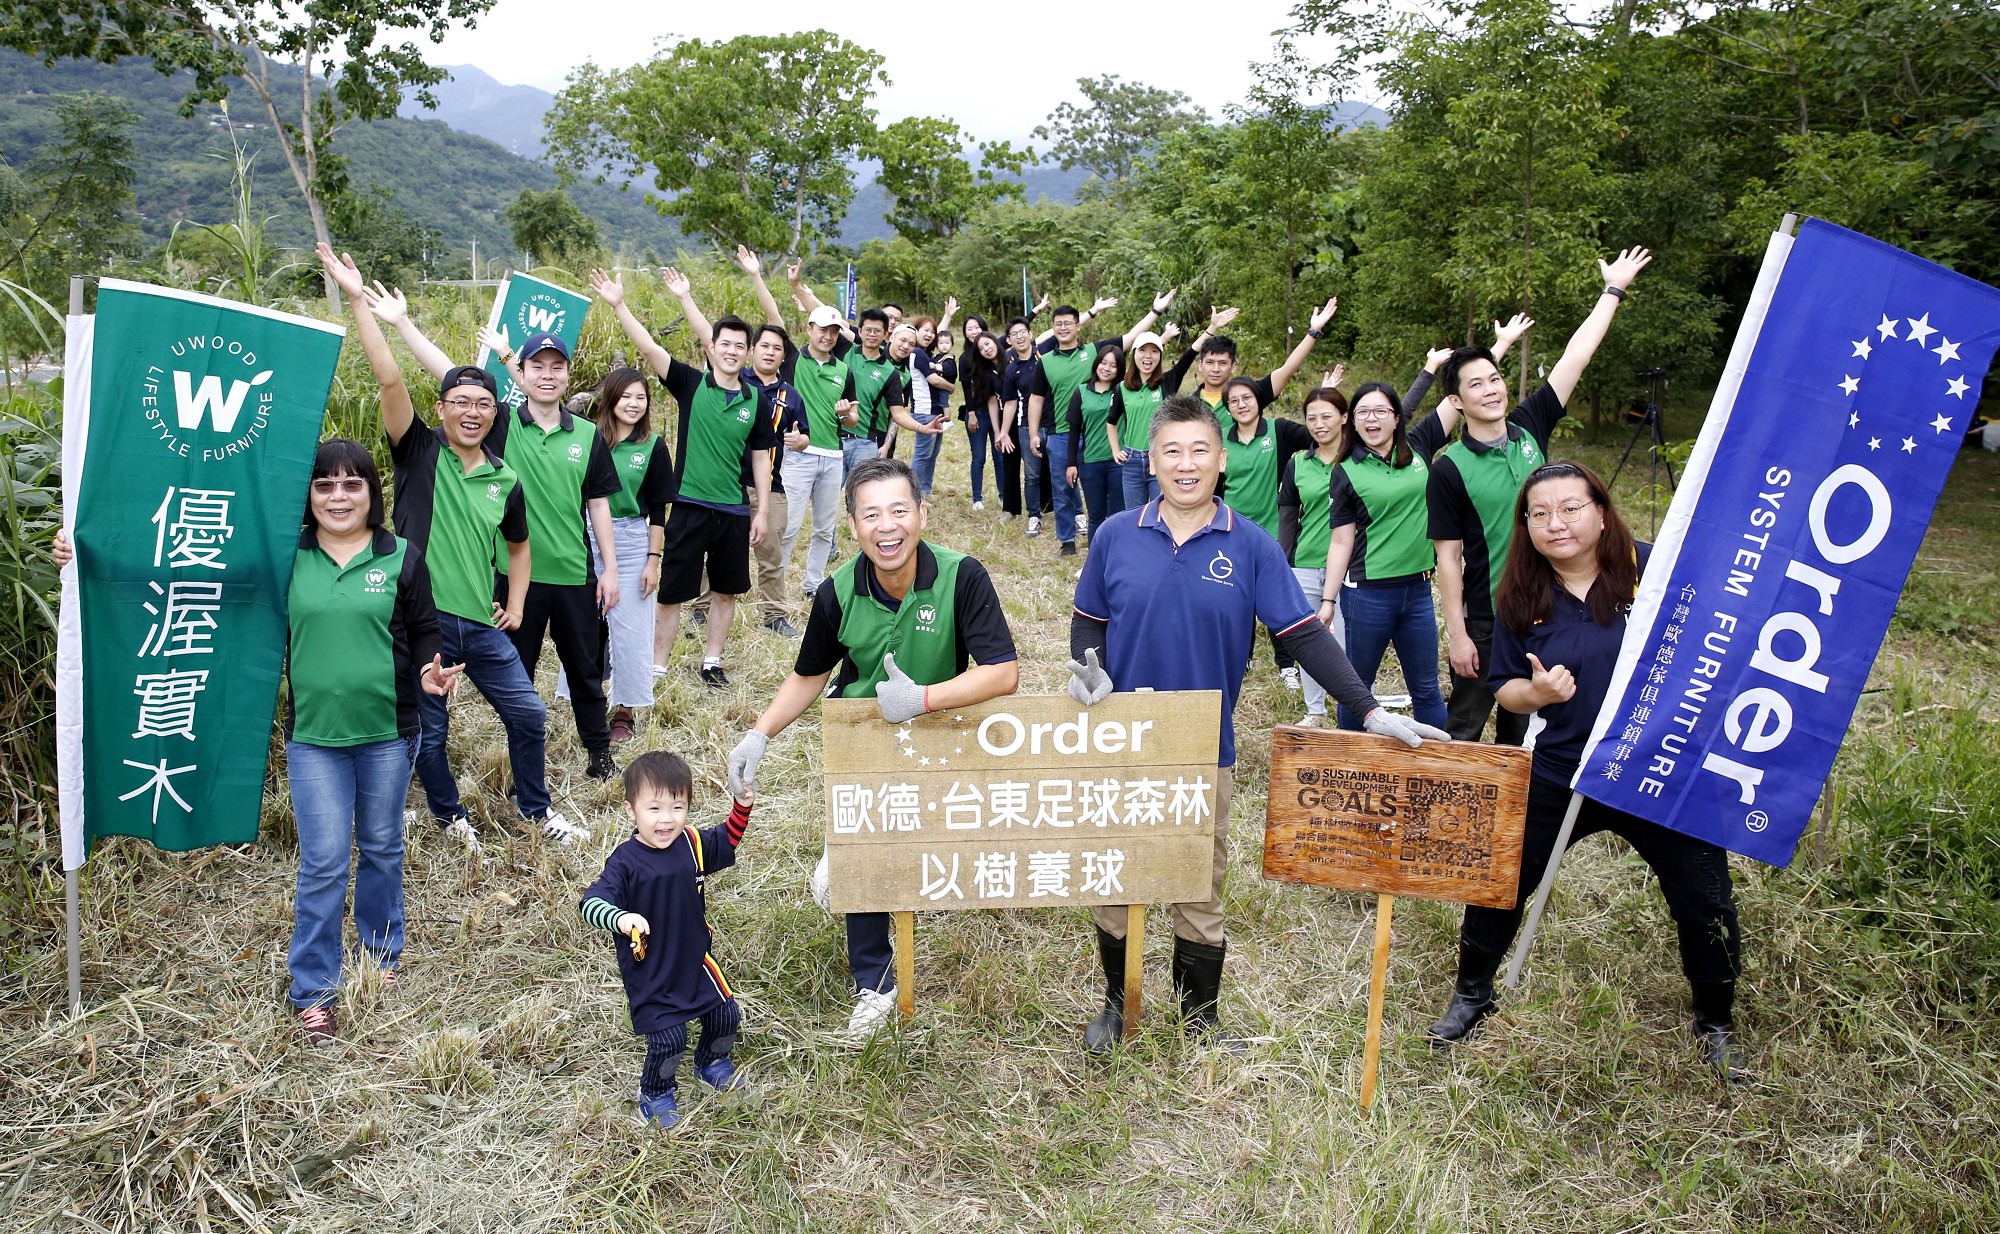 雙11種下111顆國寶樹 歐德集團打造台東森林足球場 歐德集團「百林計畫」第六座樹林 在台東